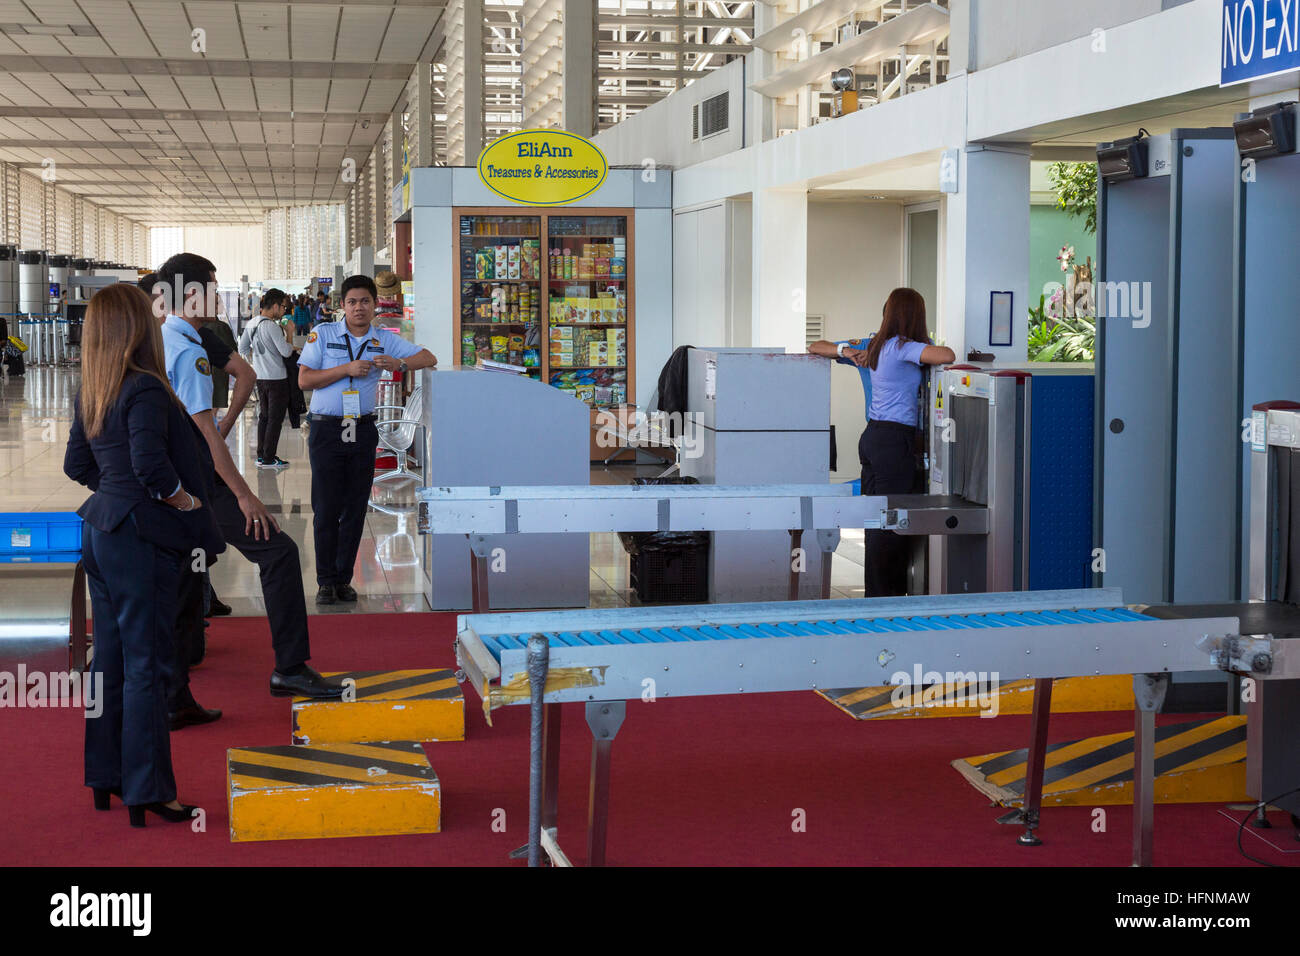 Ninoy Aquino International Airport, Manila, Philippines Stock Photo